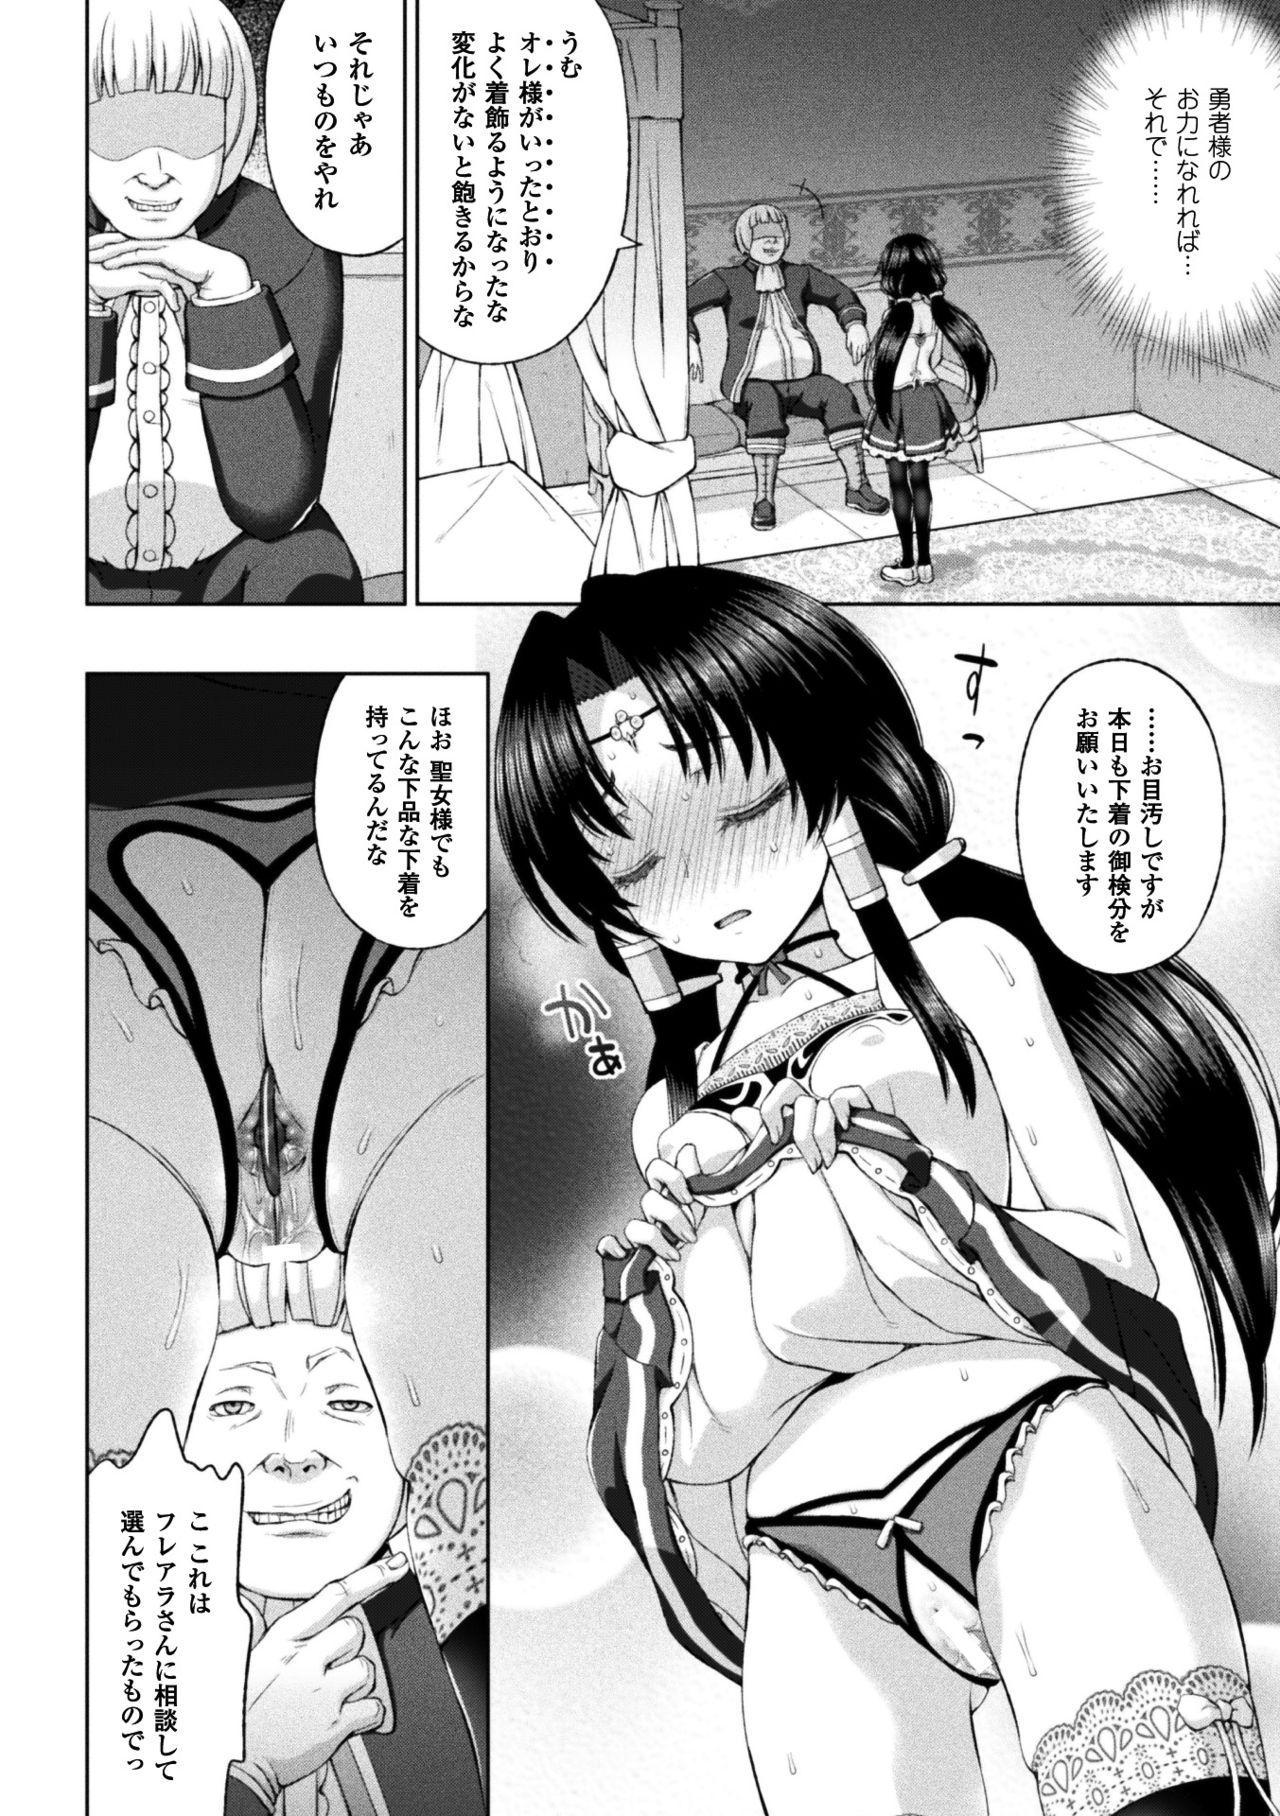 Seigi no Heroine Kangoku File Vol. 14 41